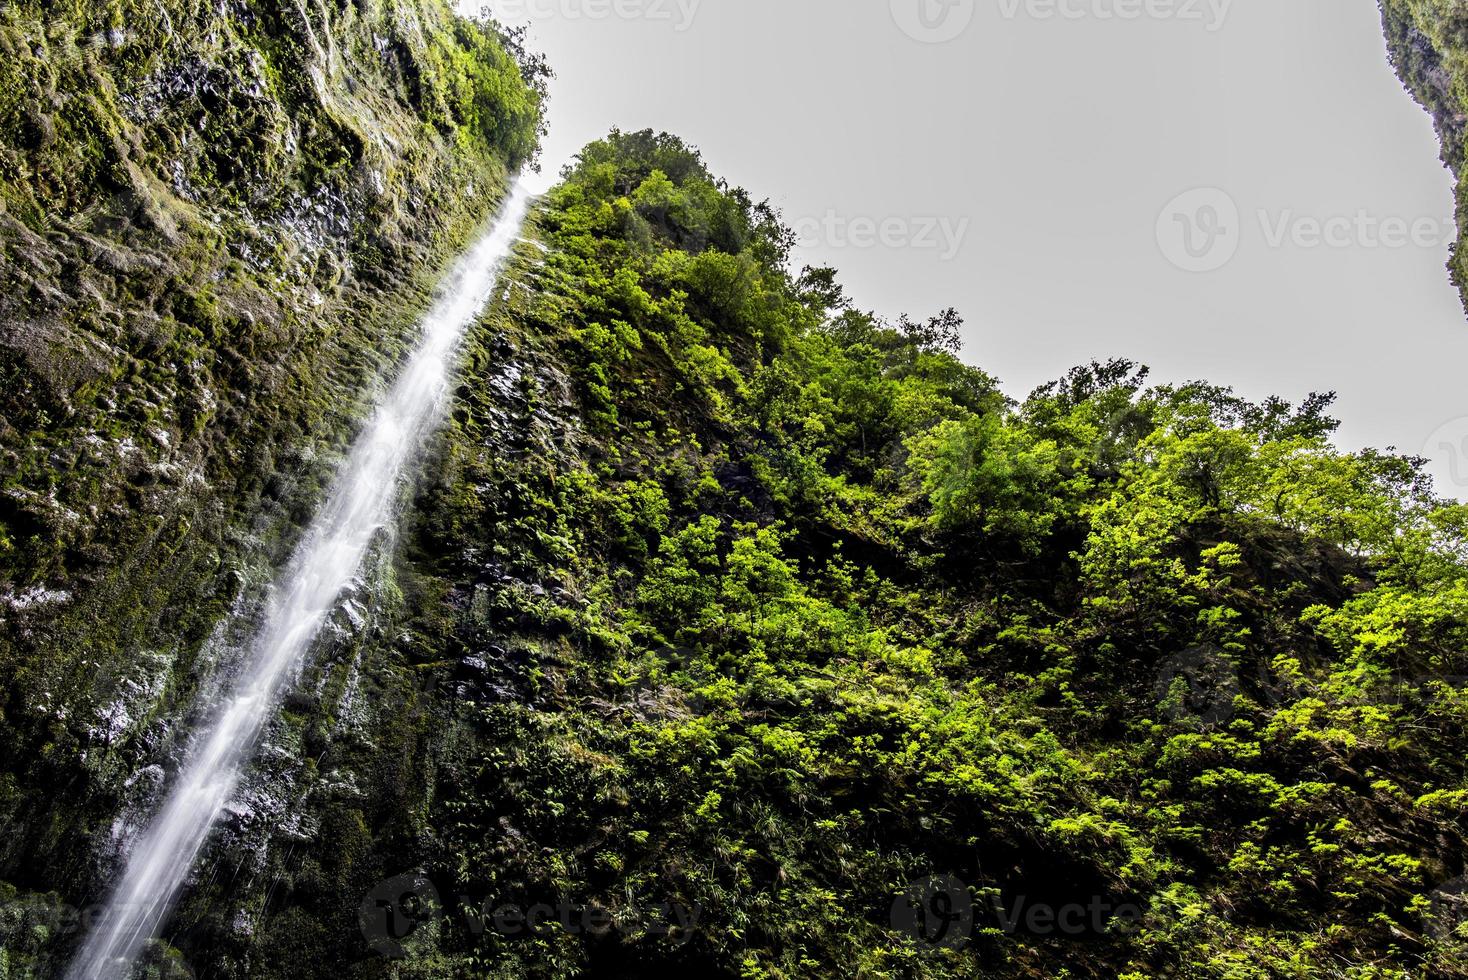 2022 08 19 Madeira waterfall 1 photo